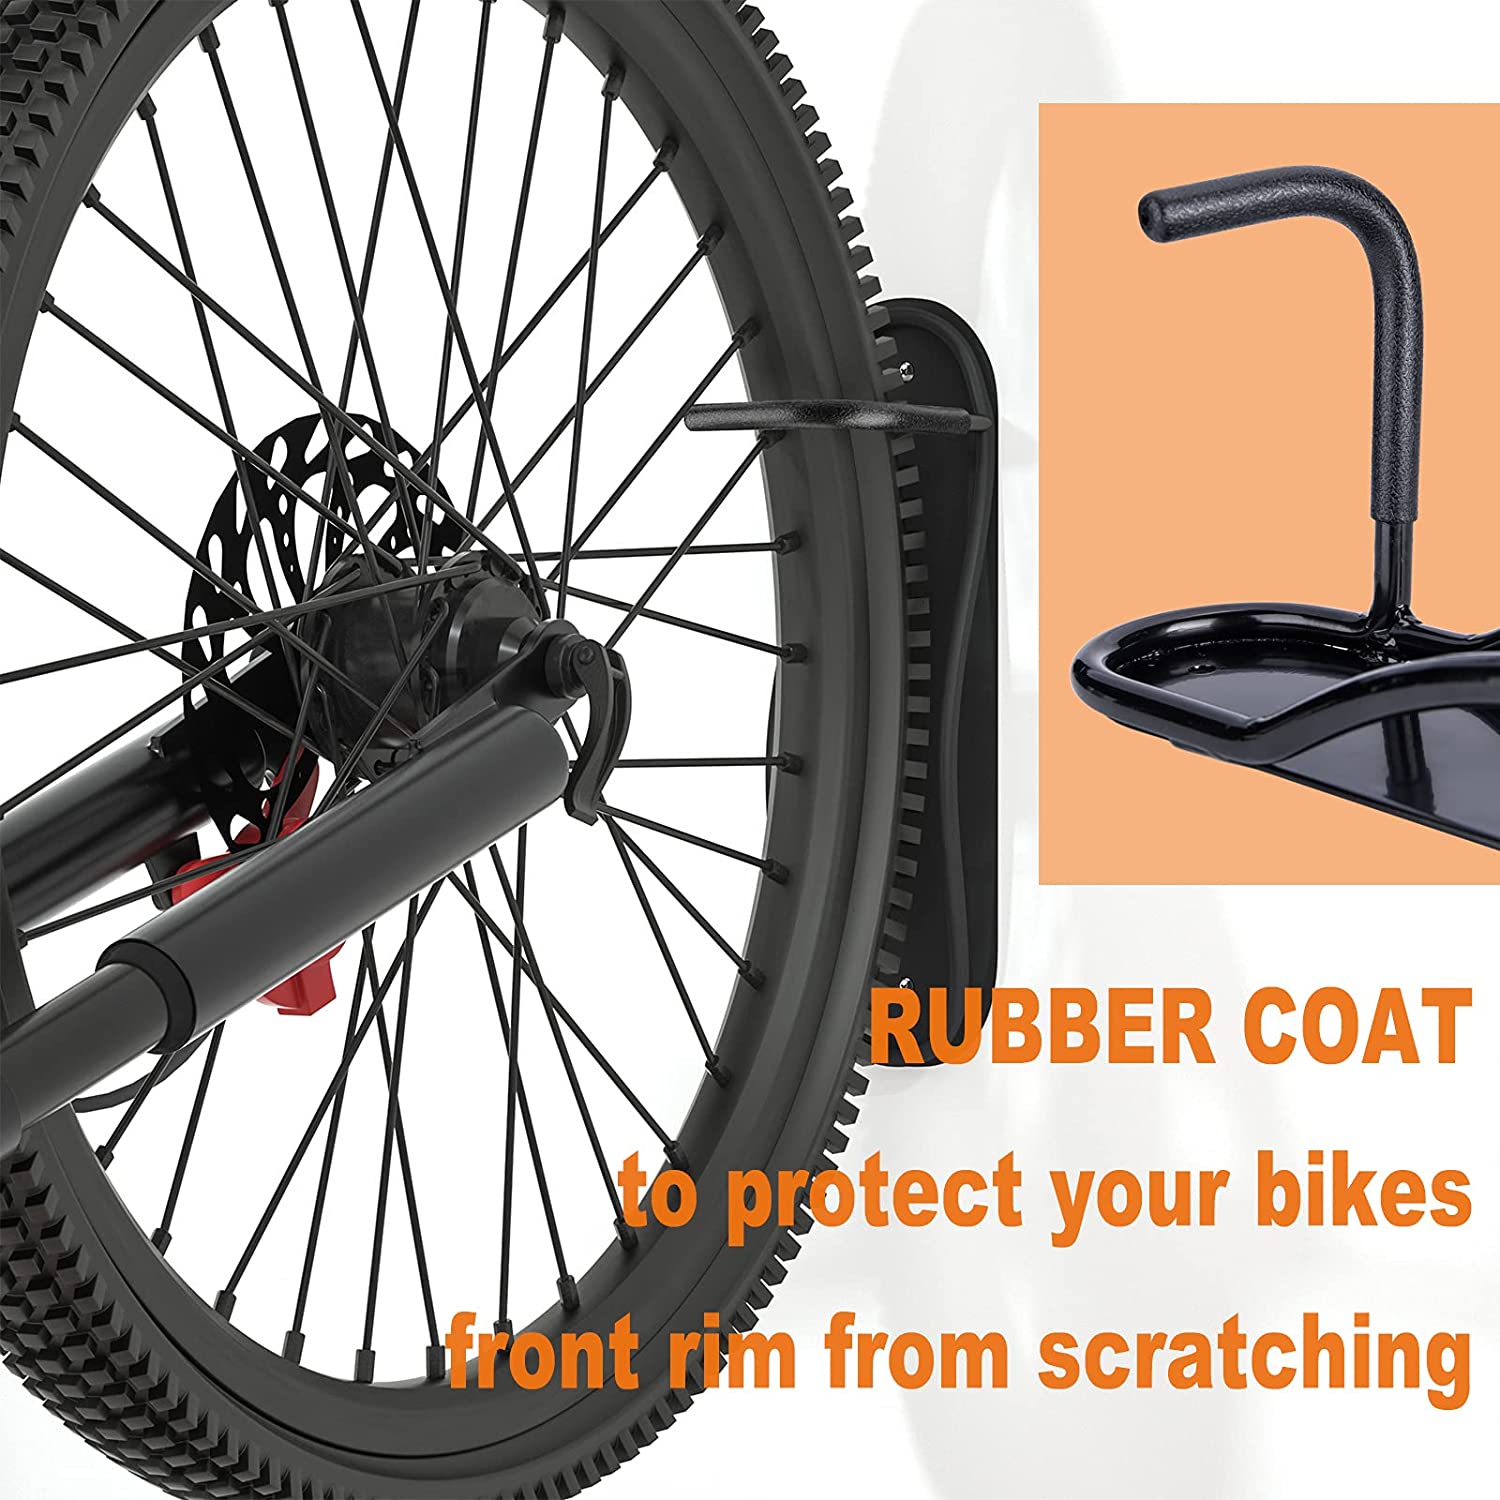 Fahrrad-Wandhalterung mit Reifenablage – Fahrrad-Aufbewahrungsregal, einfach zu installieren – platzsparende Halterung, Haken für Straßen-, Berg- oder Hybridräder